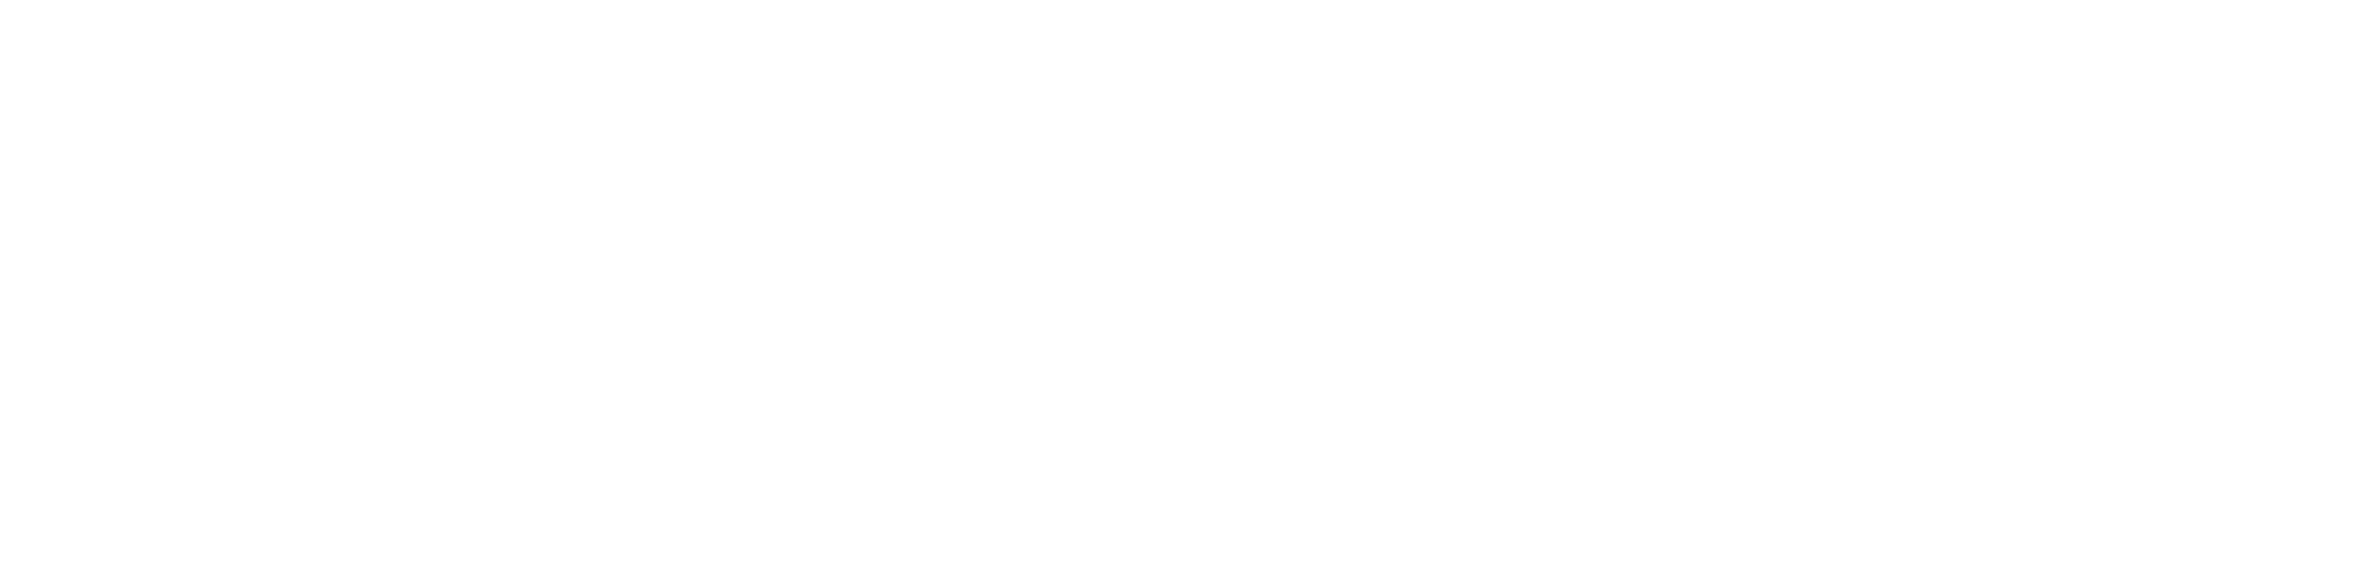 marbella-costadelsol-realestate.co.uk